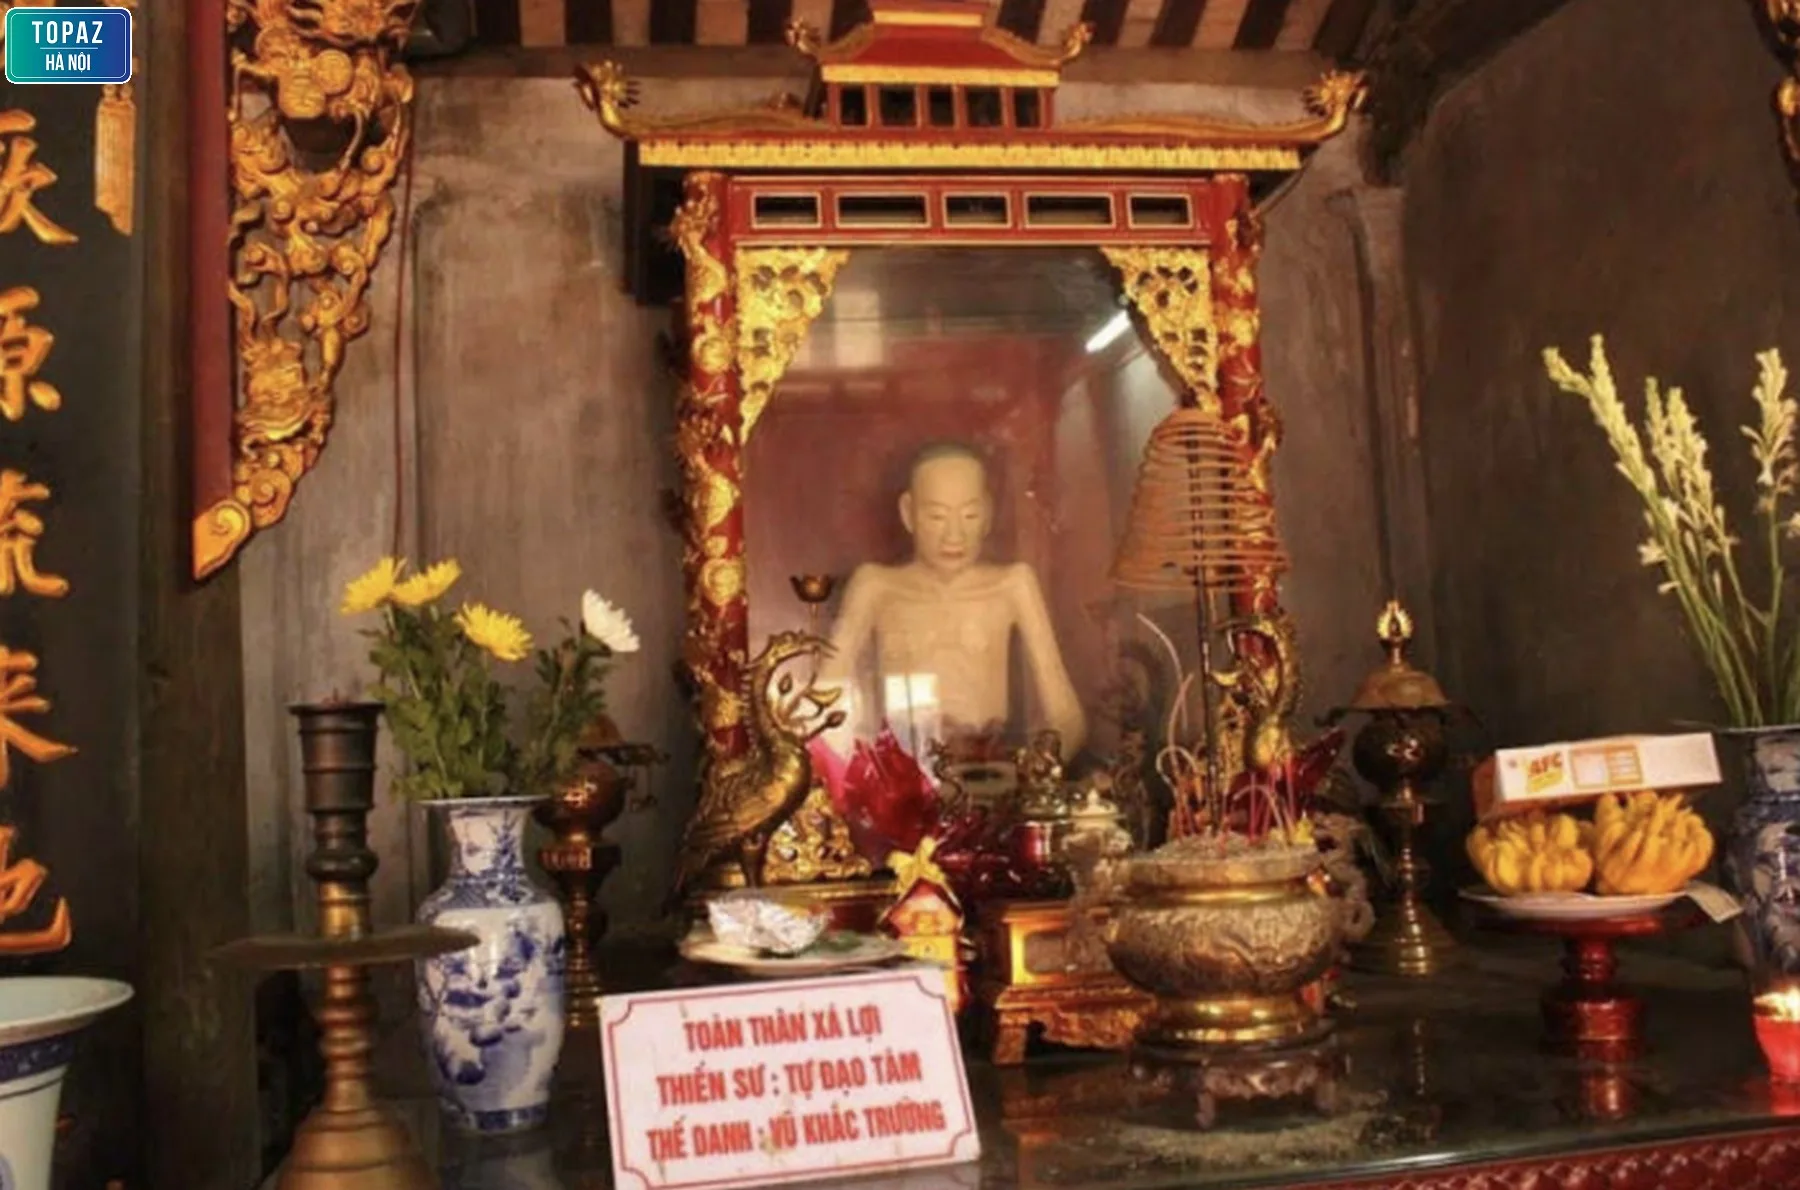 Bức tượng quý ở trong chùa Đậu 